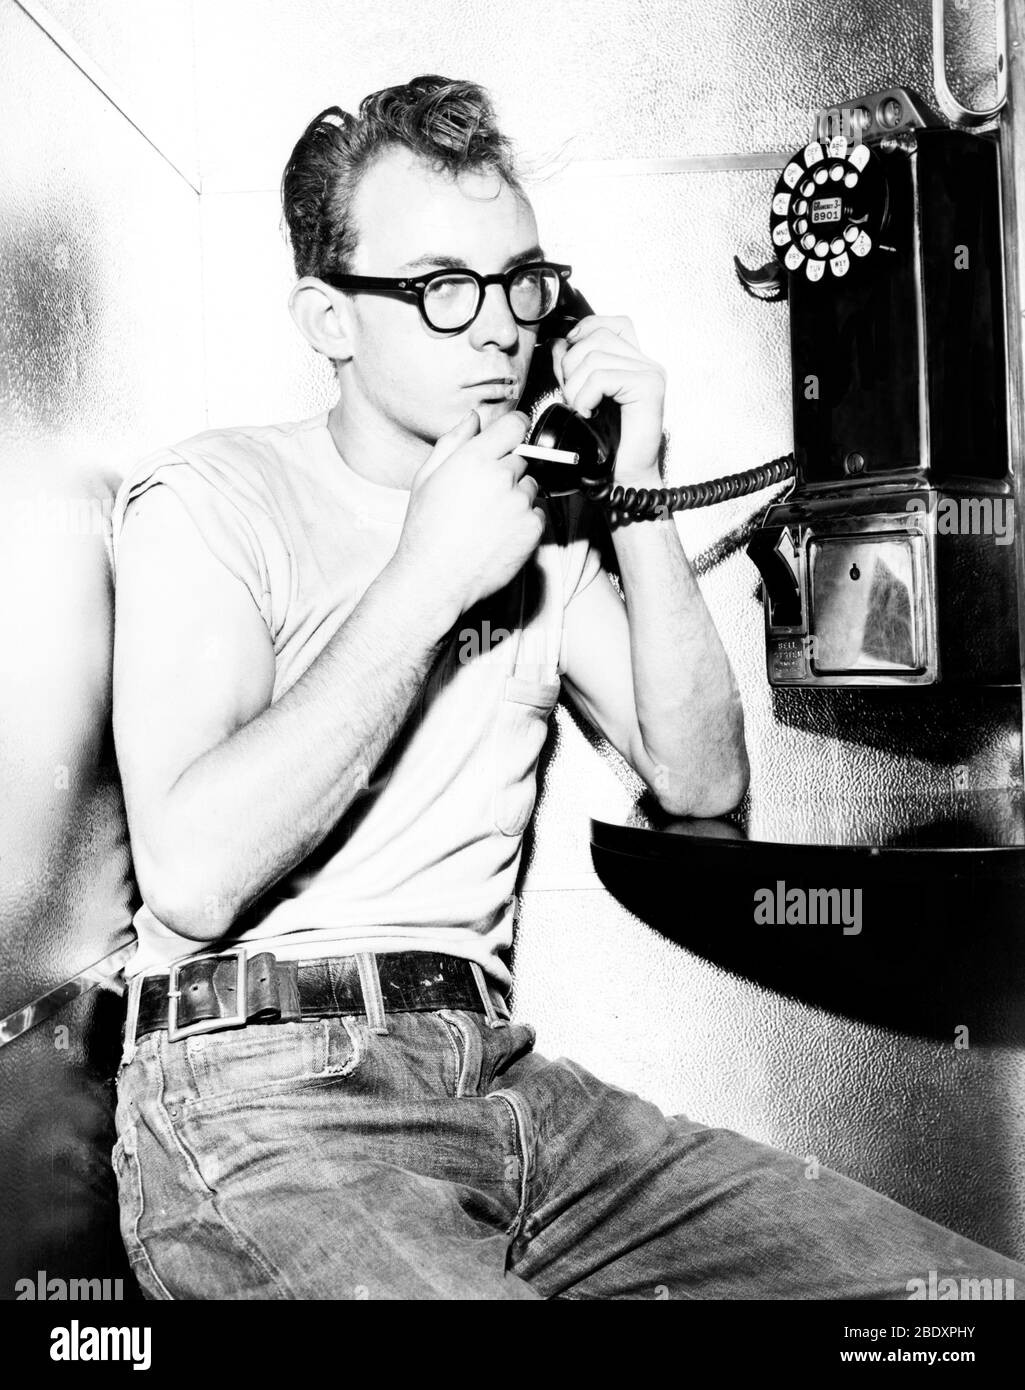 Adolescente usando Payphone, 1959 Foto de stock